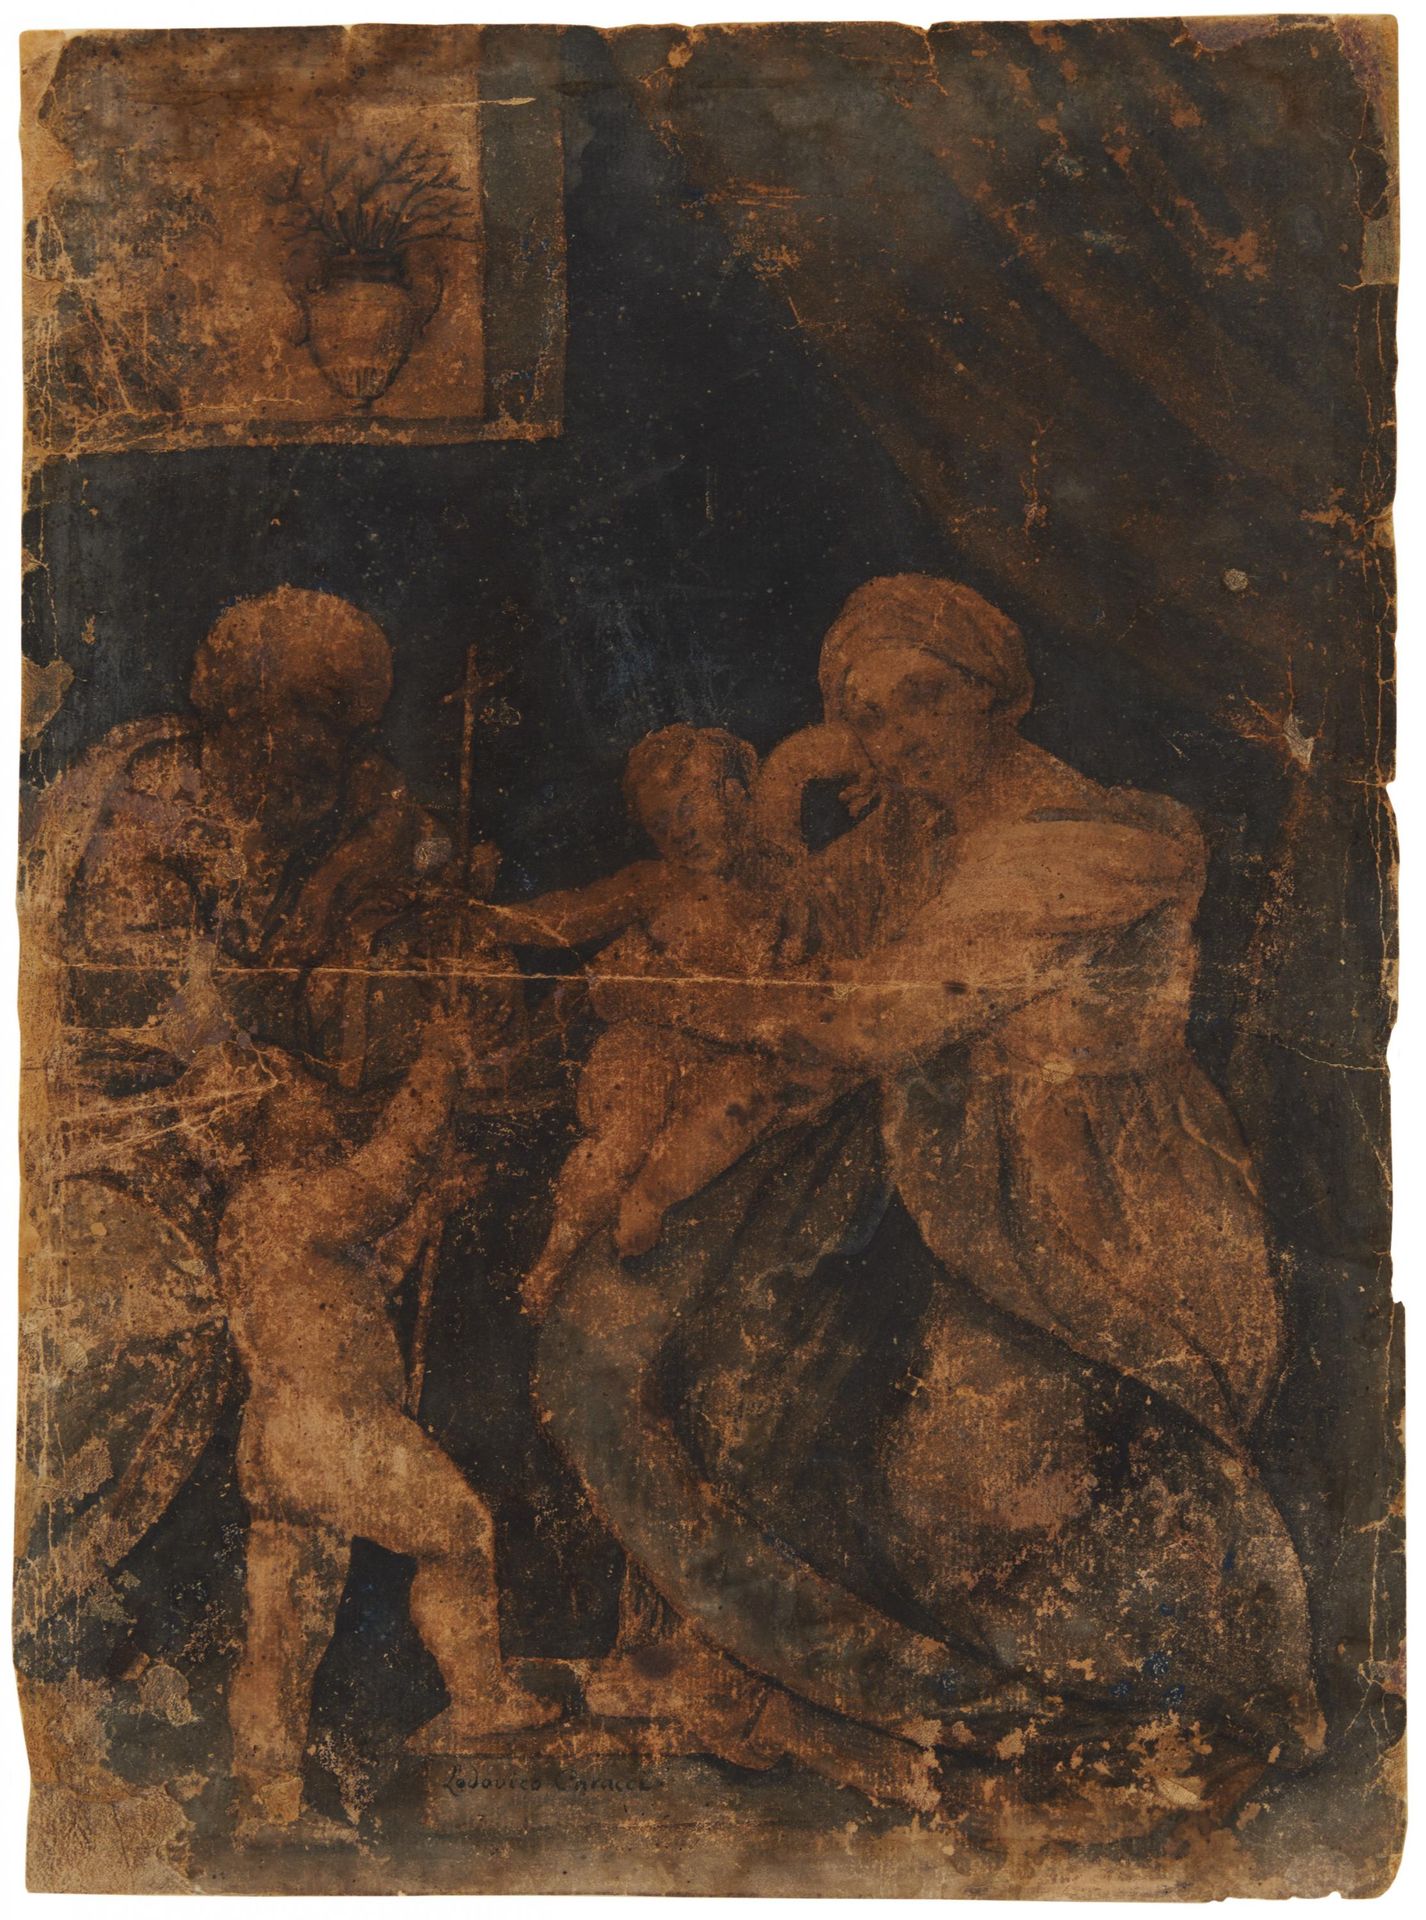 GUIDO RENI RENI, GUIDO
1575 Calvenzano - 1642 Bologna

Copia dopo
Titolo : Santa&hellip;